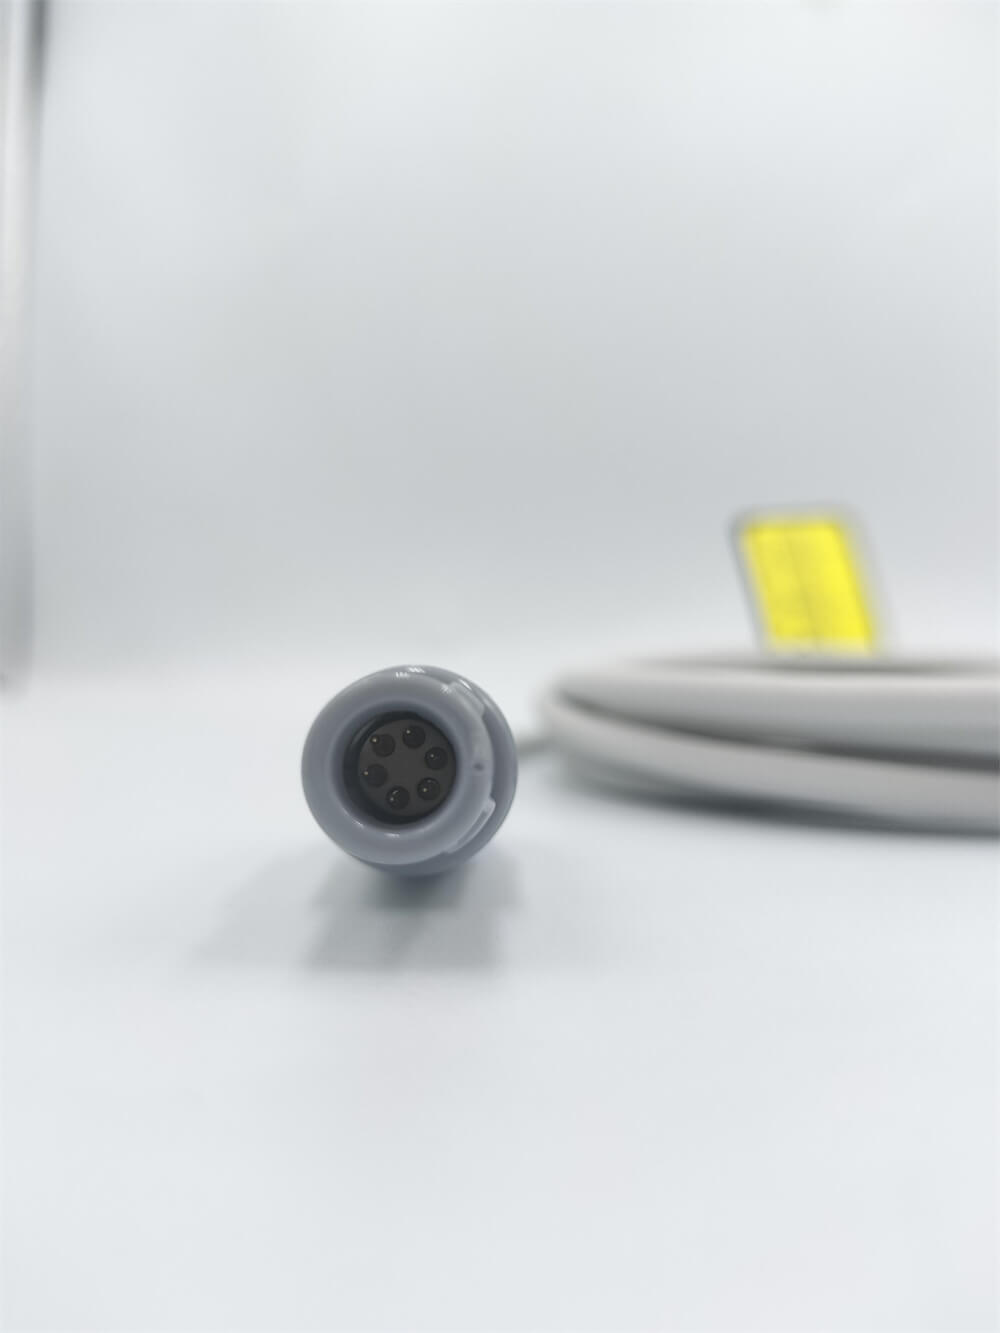 再利用可能な Spo2 センサー Neonate Wrap 6 ピン互換 Contec